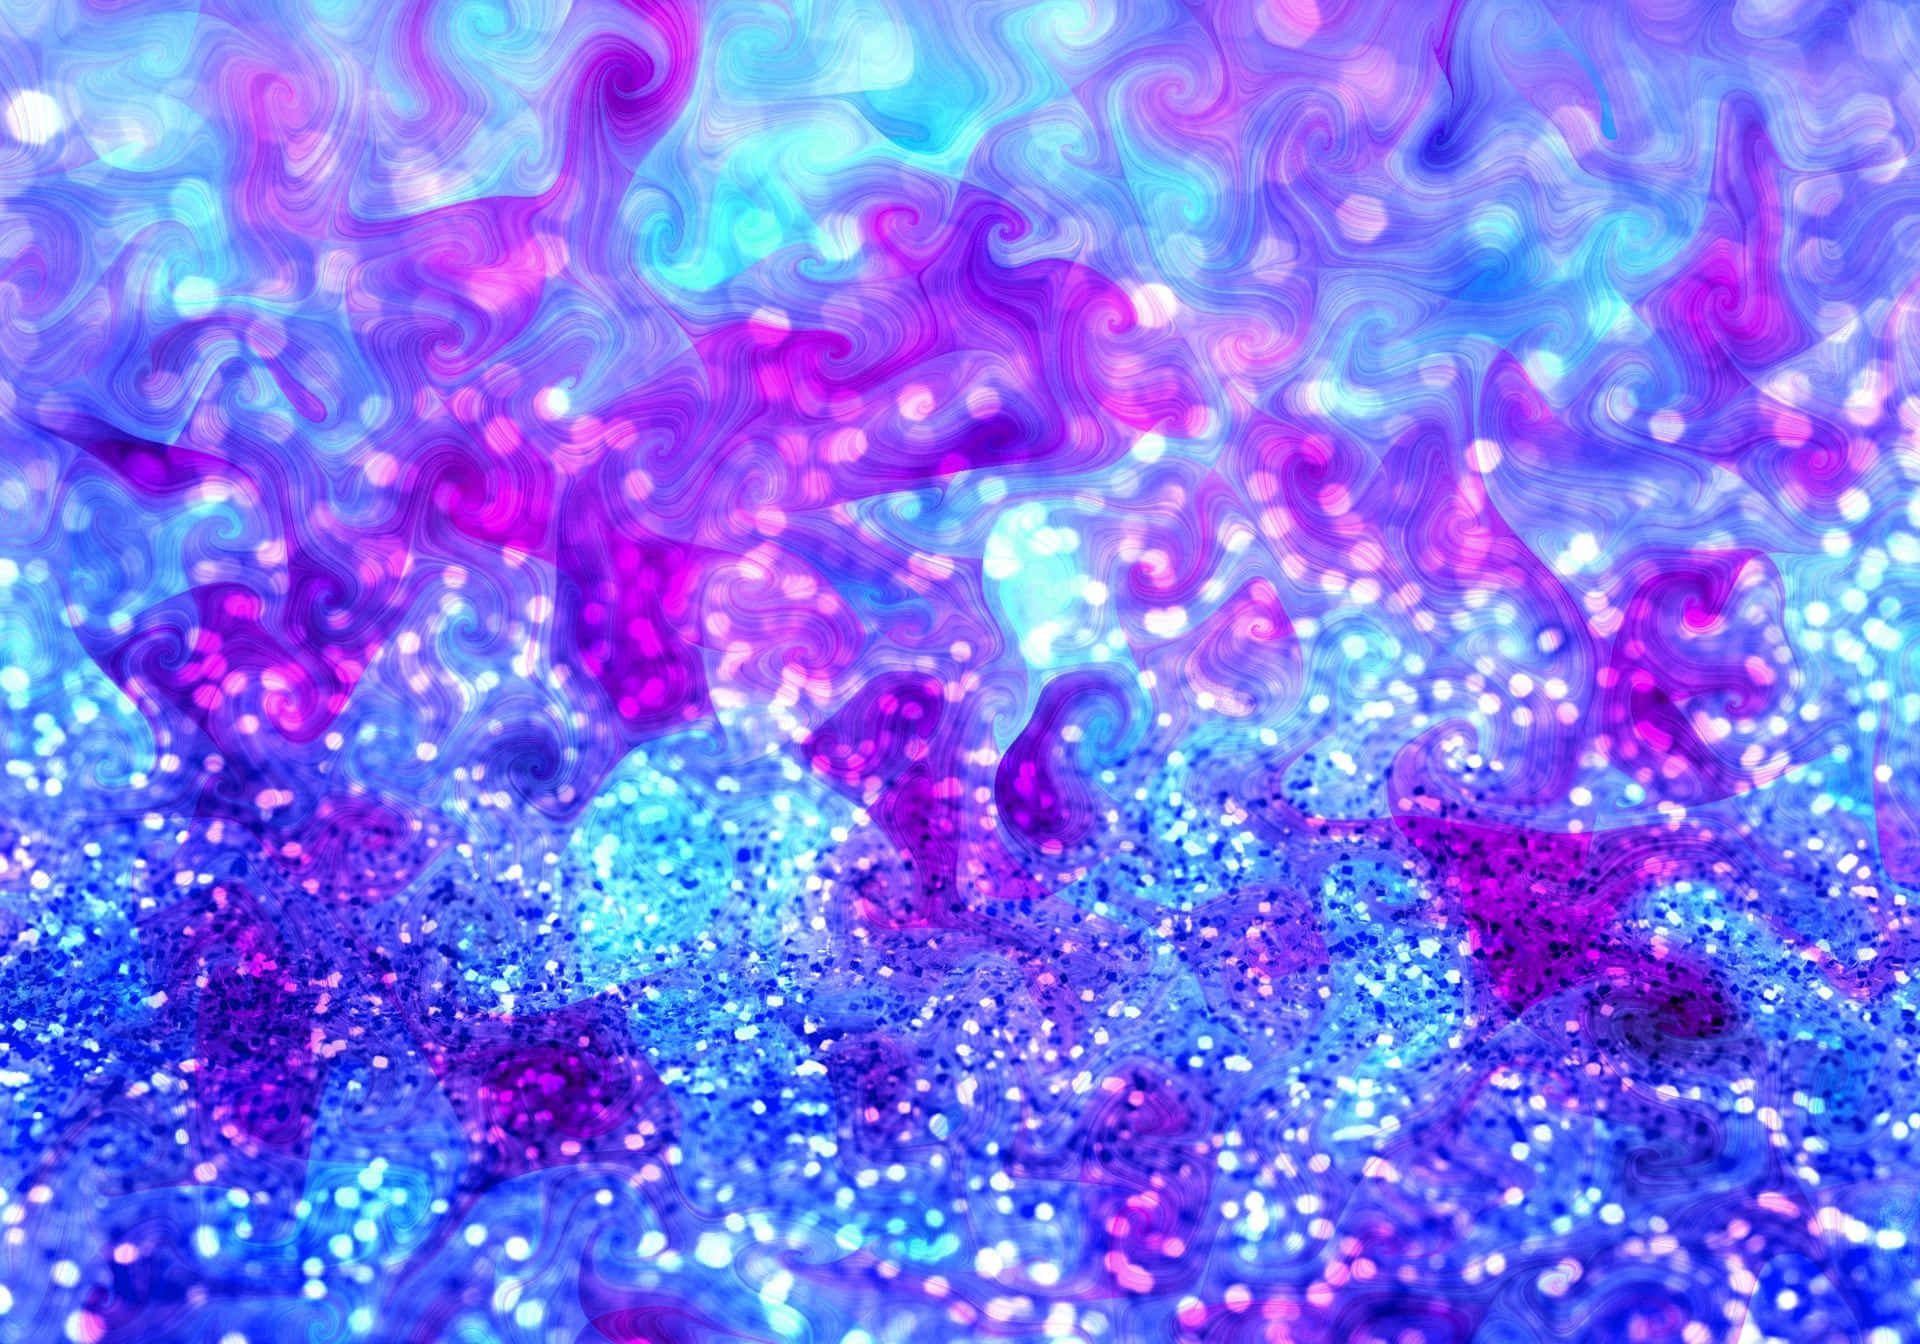 A brilliant and vibrant purple glitter background